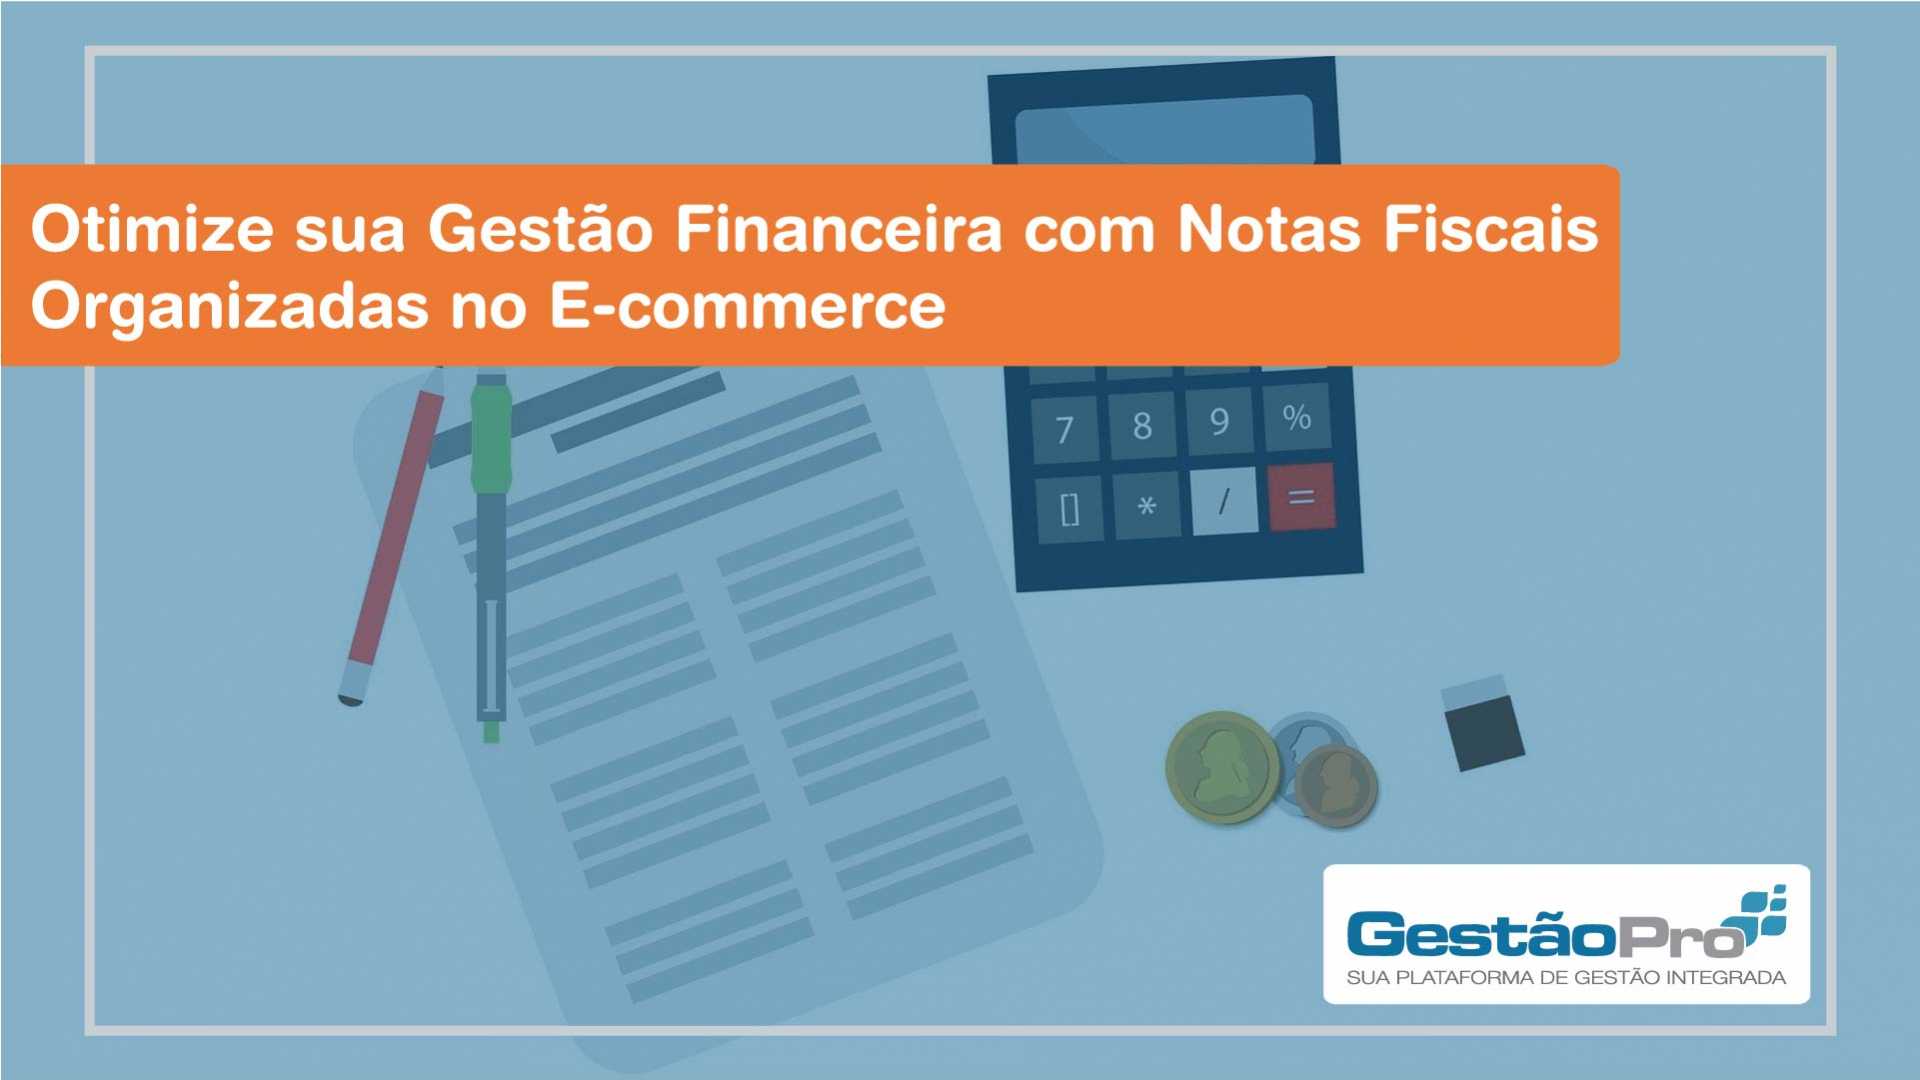 Otimize sua Gestão Financeira com Notas Fiscais Organizadas no E-commerce